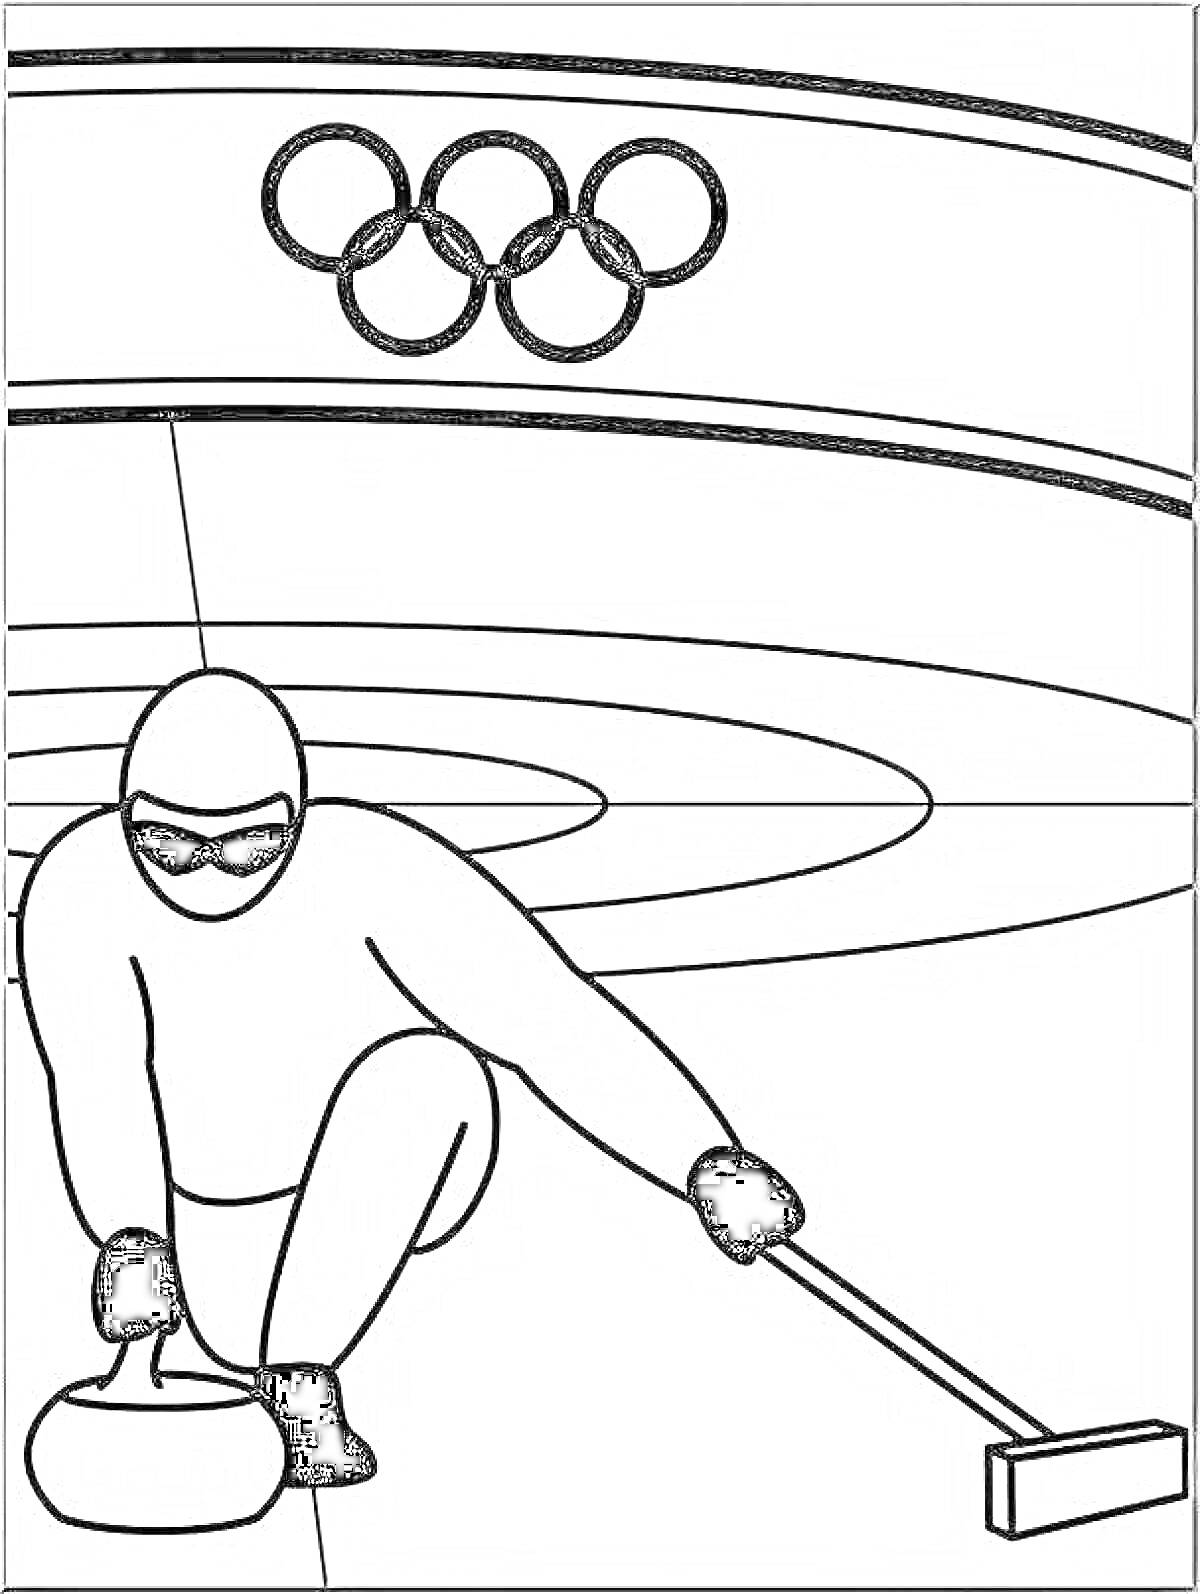 Раскраска Керлингист со щеткой и камнем на ледовом поле под олимпийскими кольцами